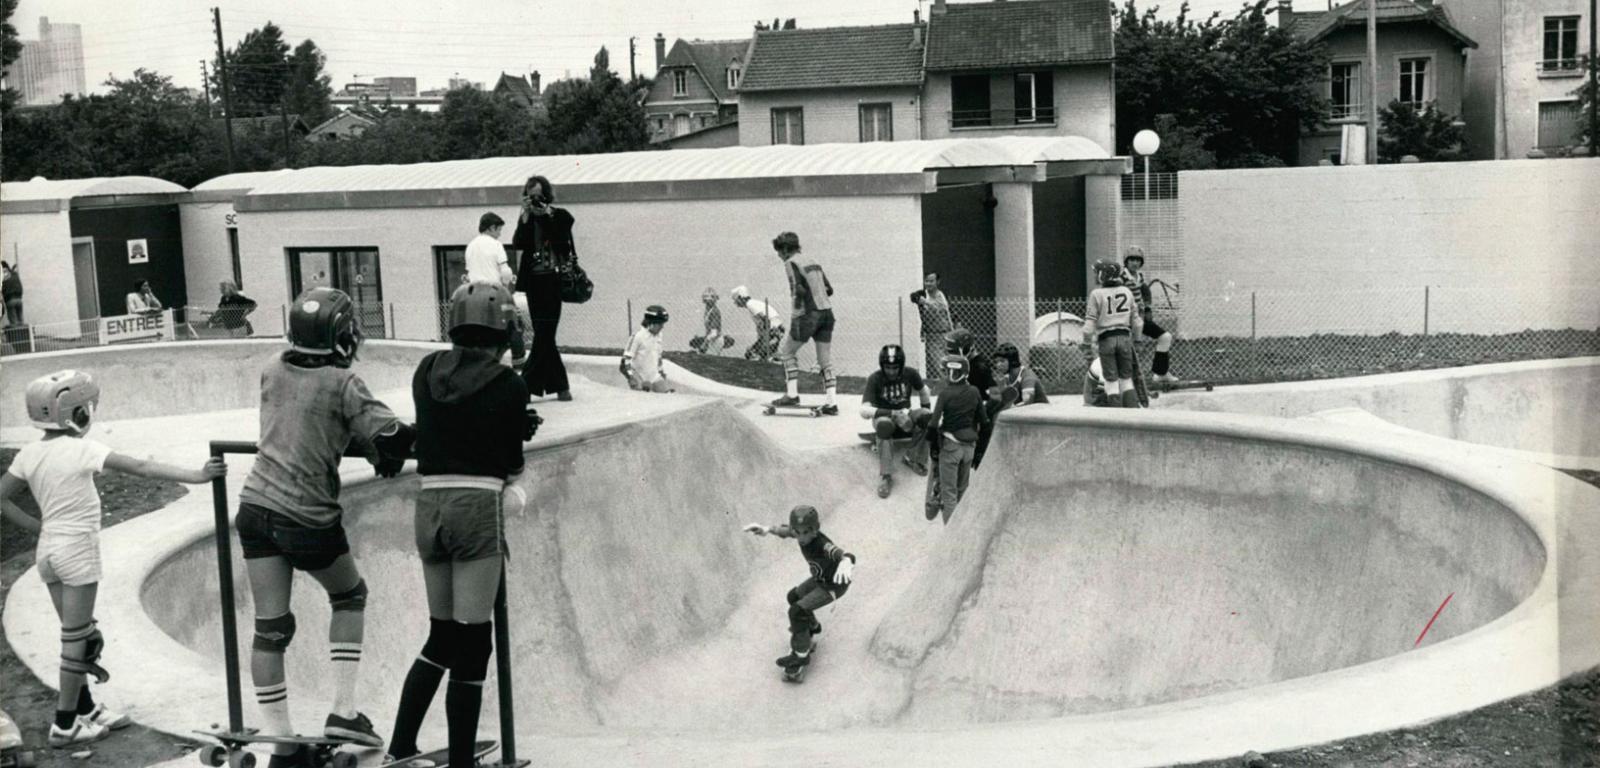 Sierpień 1978 r., południowa Kalifornia – pusty basen, w którym młodzi adepci skateboardingu doskonalą swoje umiejętności.